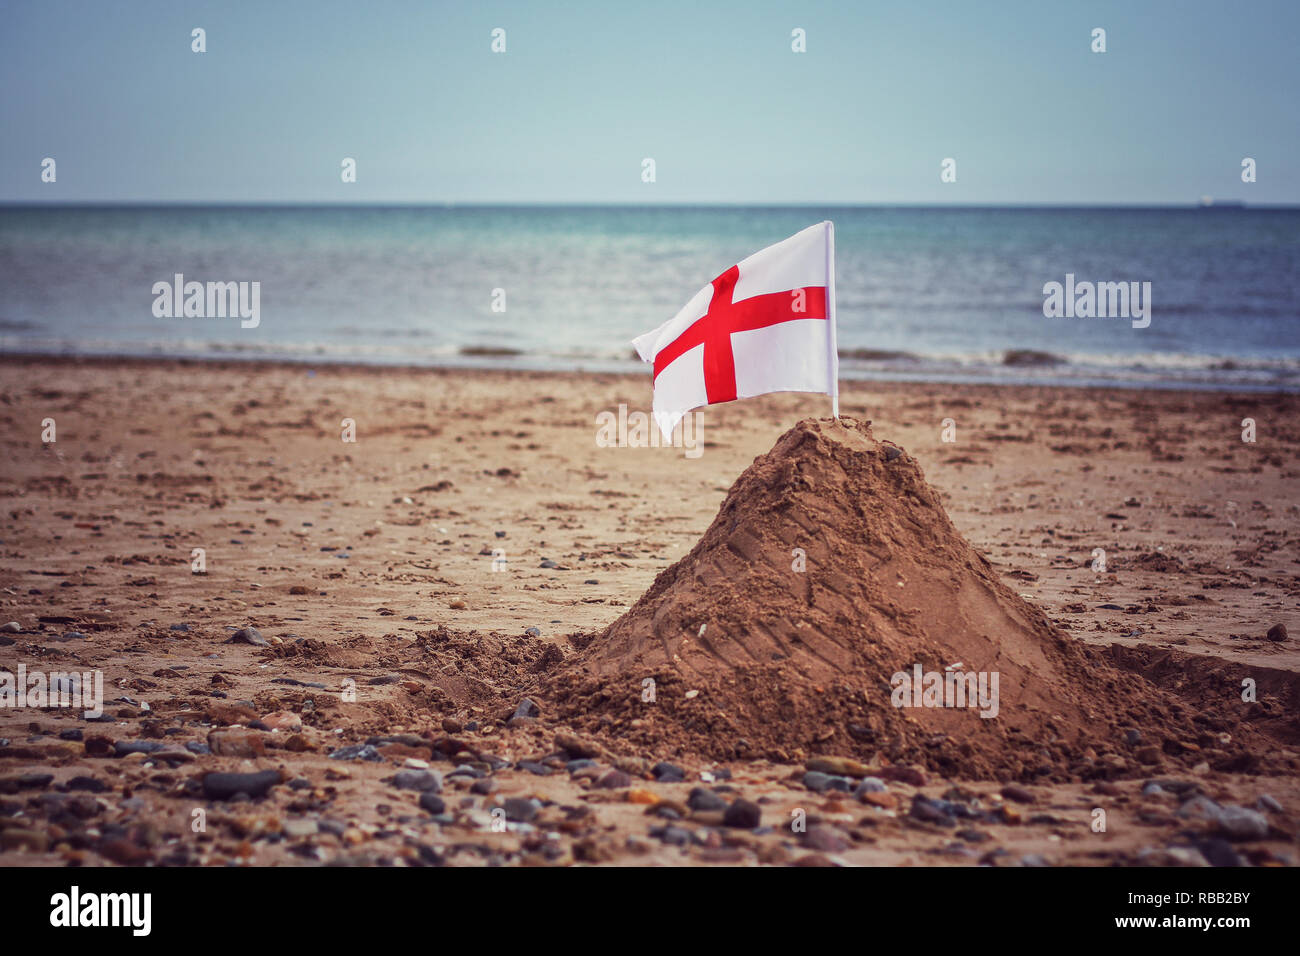 Inglés una bandera con la cruz de San Jorge en un castillo de arena en una playa británica que representa el control de fronteras y límites en cuestiones de inmigración ilegal en el REINO UNIDO Foto de stock